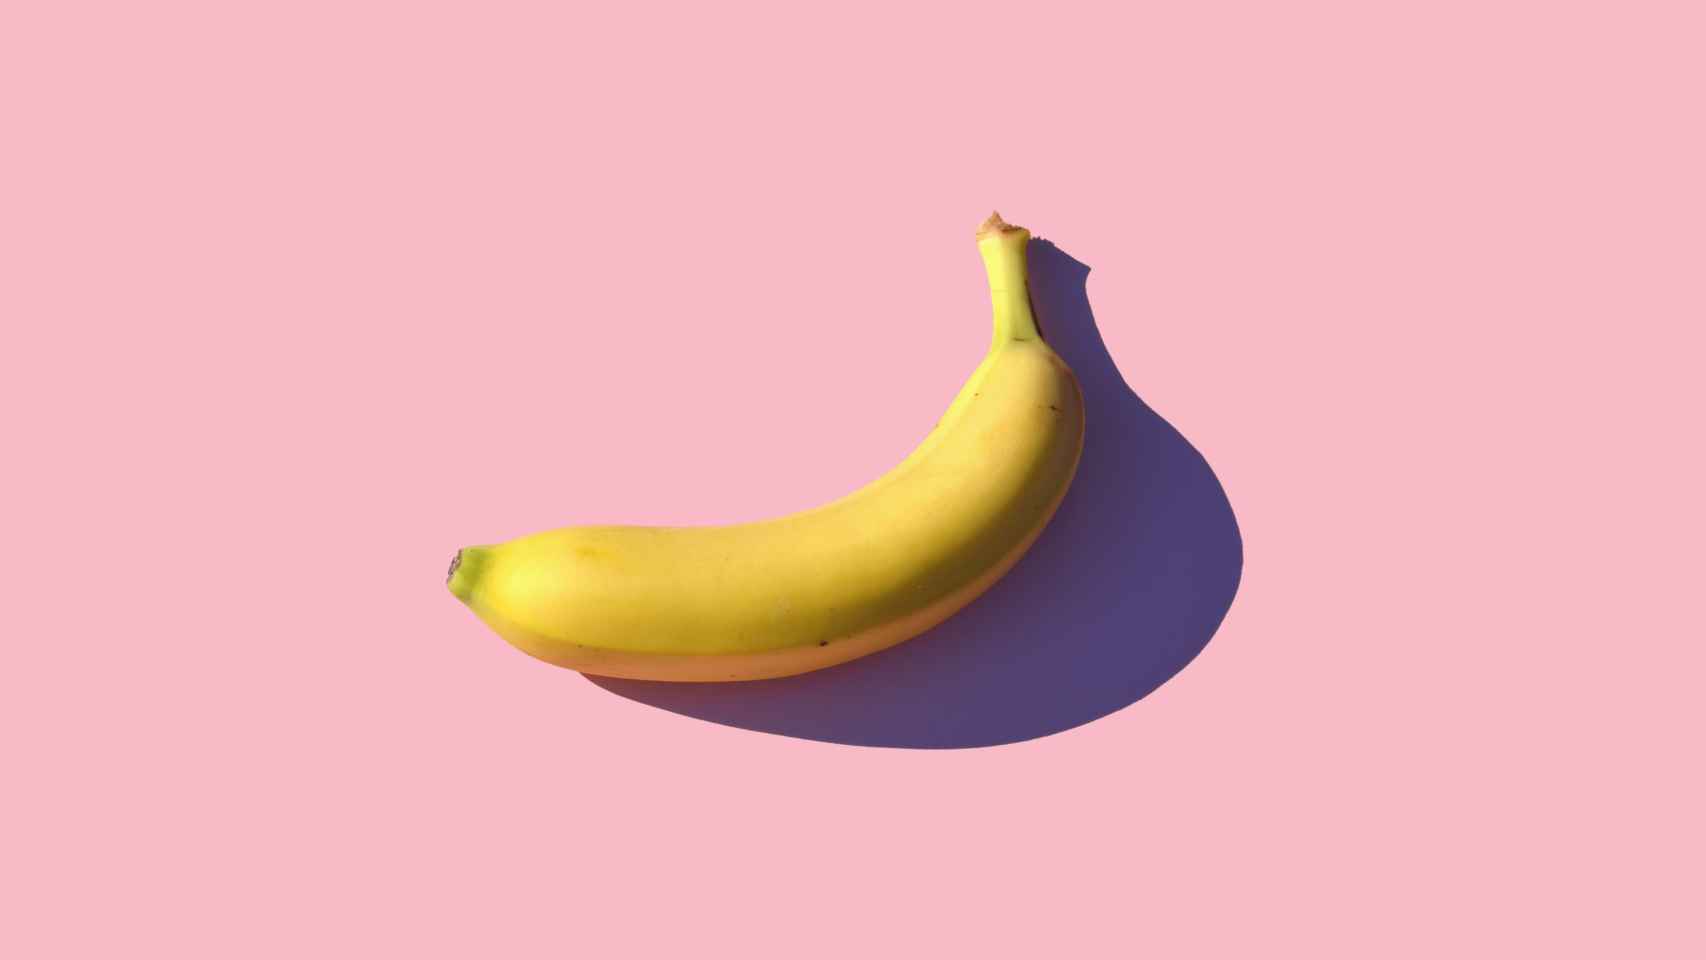 Detalle de un plátano.